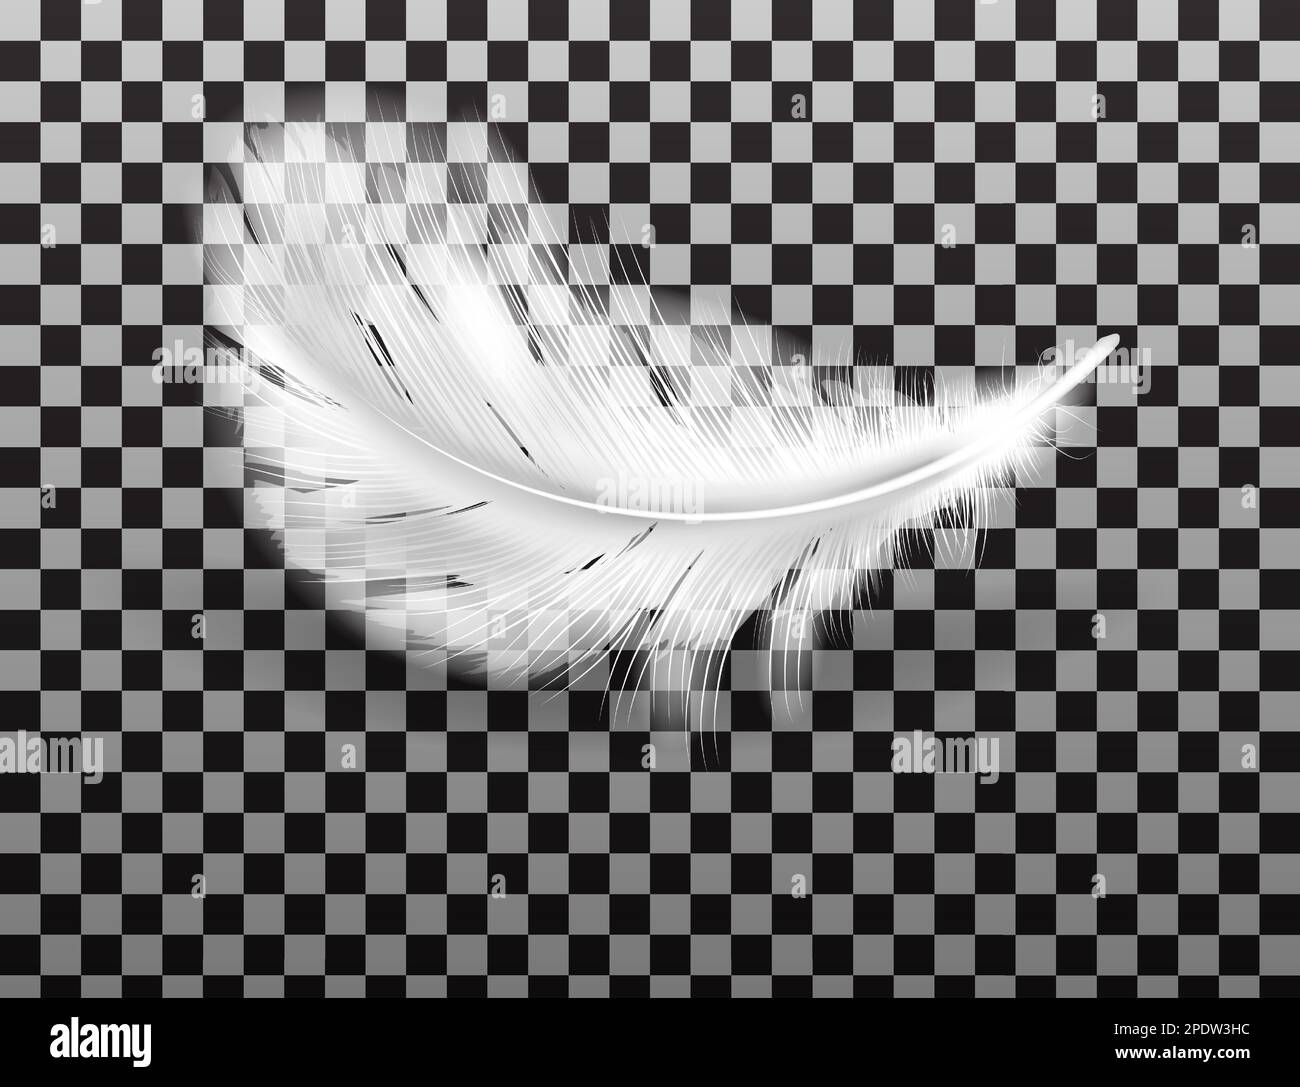 Plume blanche douce avec vecteur d'ombre réaliste isolée sur fond transparent. Plumes d'ailes d'oiseaux ou d'ange, symbole de douceur et de pureté, élément de conception Illustration de Vecteur